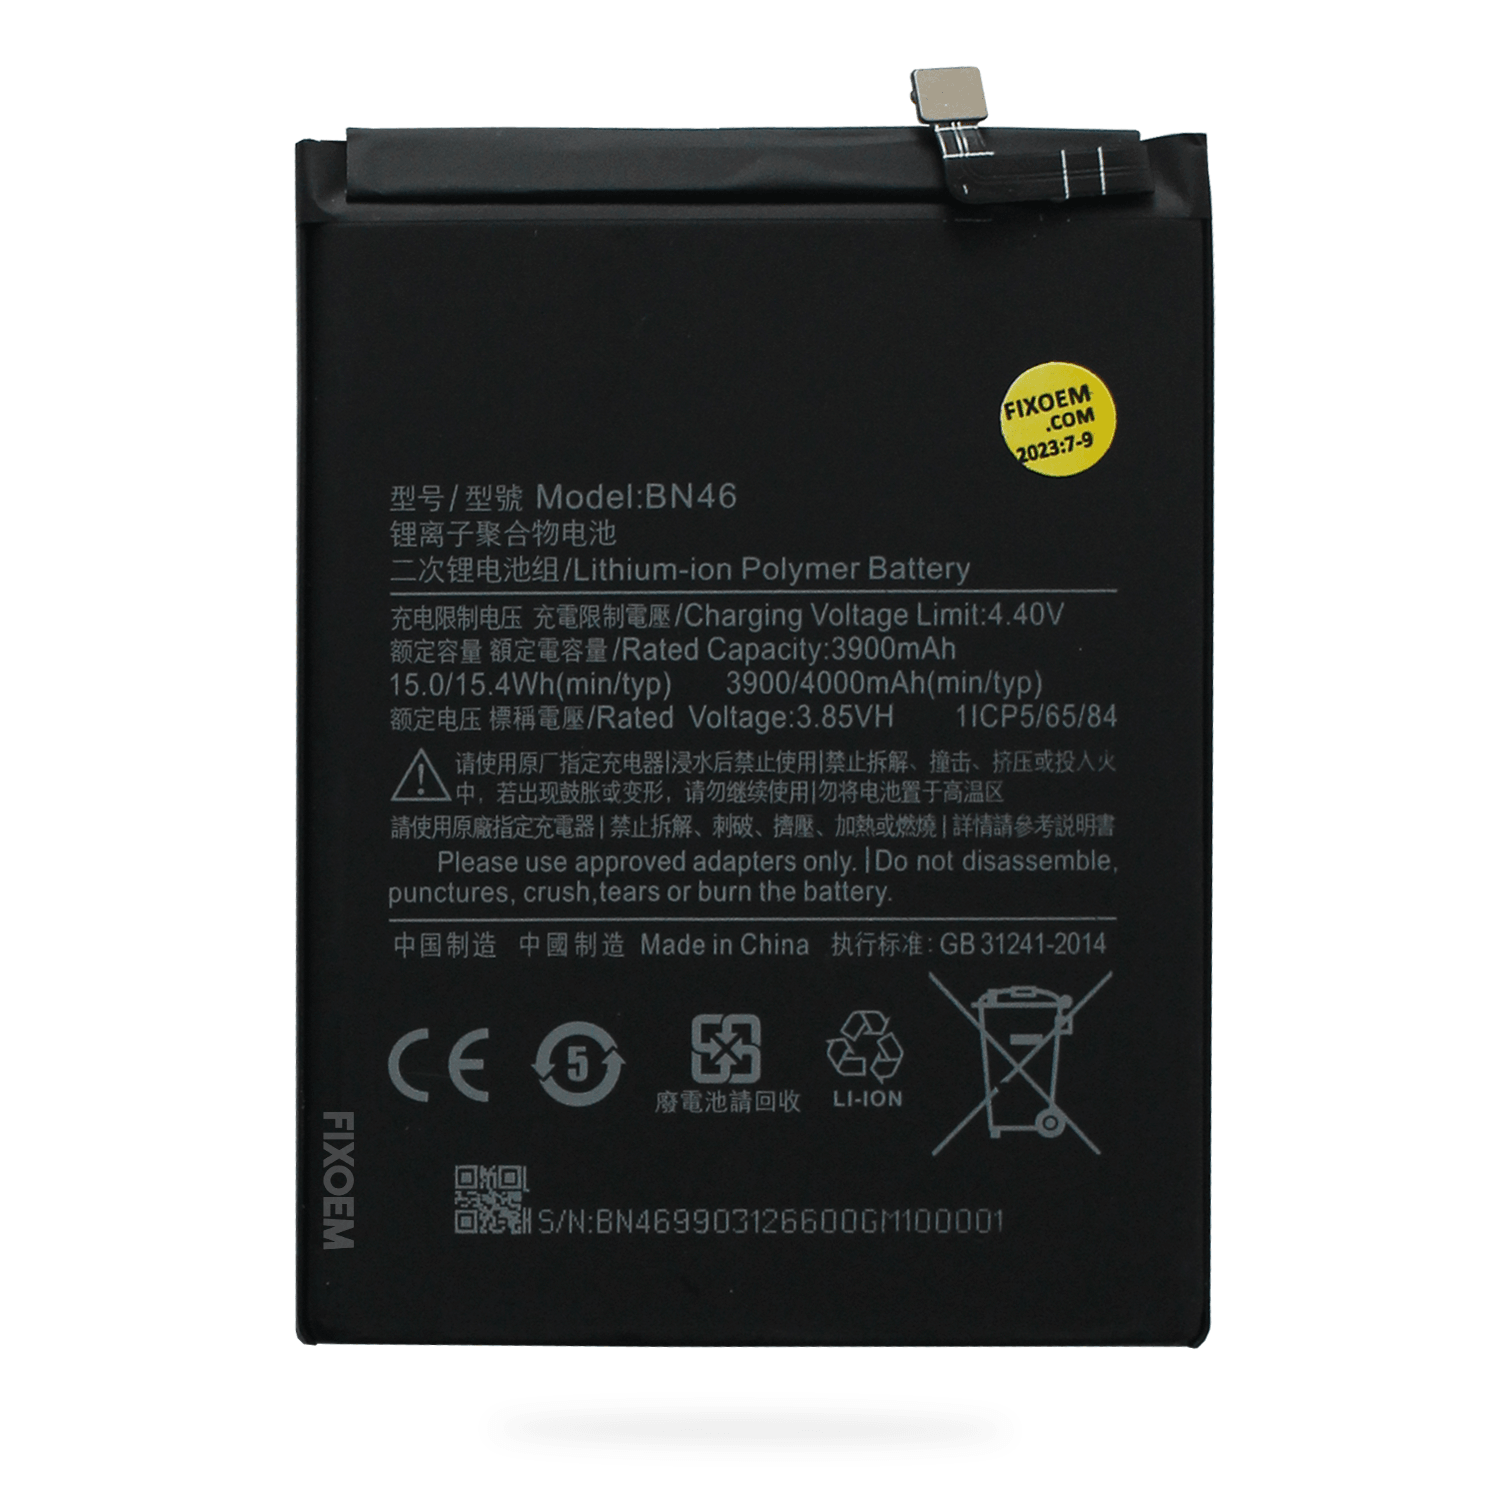 Bateria Xiaomi Redmi Note 8 / Note 8T / Redmi 7 / Note 6 Bn46 M1908C3XG M1908C3JH M1908C3JG M1908C3JI M1810F6LG a solo $ 120.00 Refaccion y puestos celulares, refurbish y microelectronica.- FixOEM